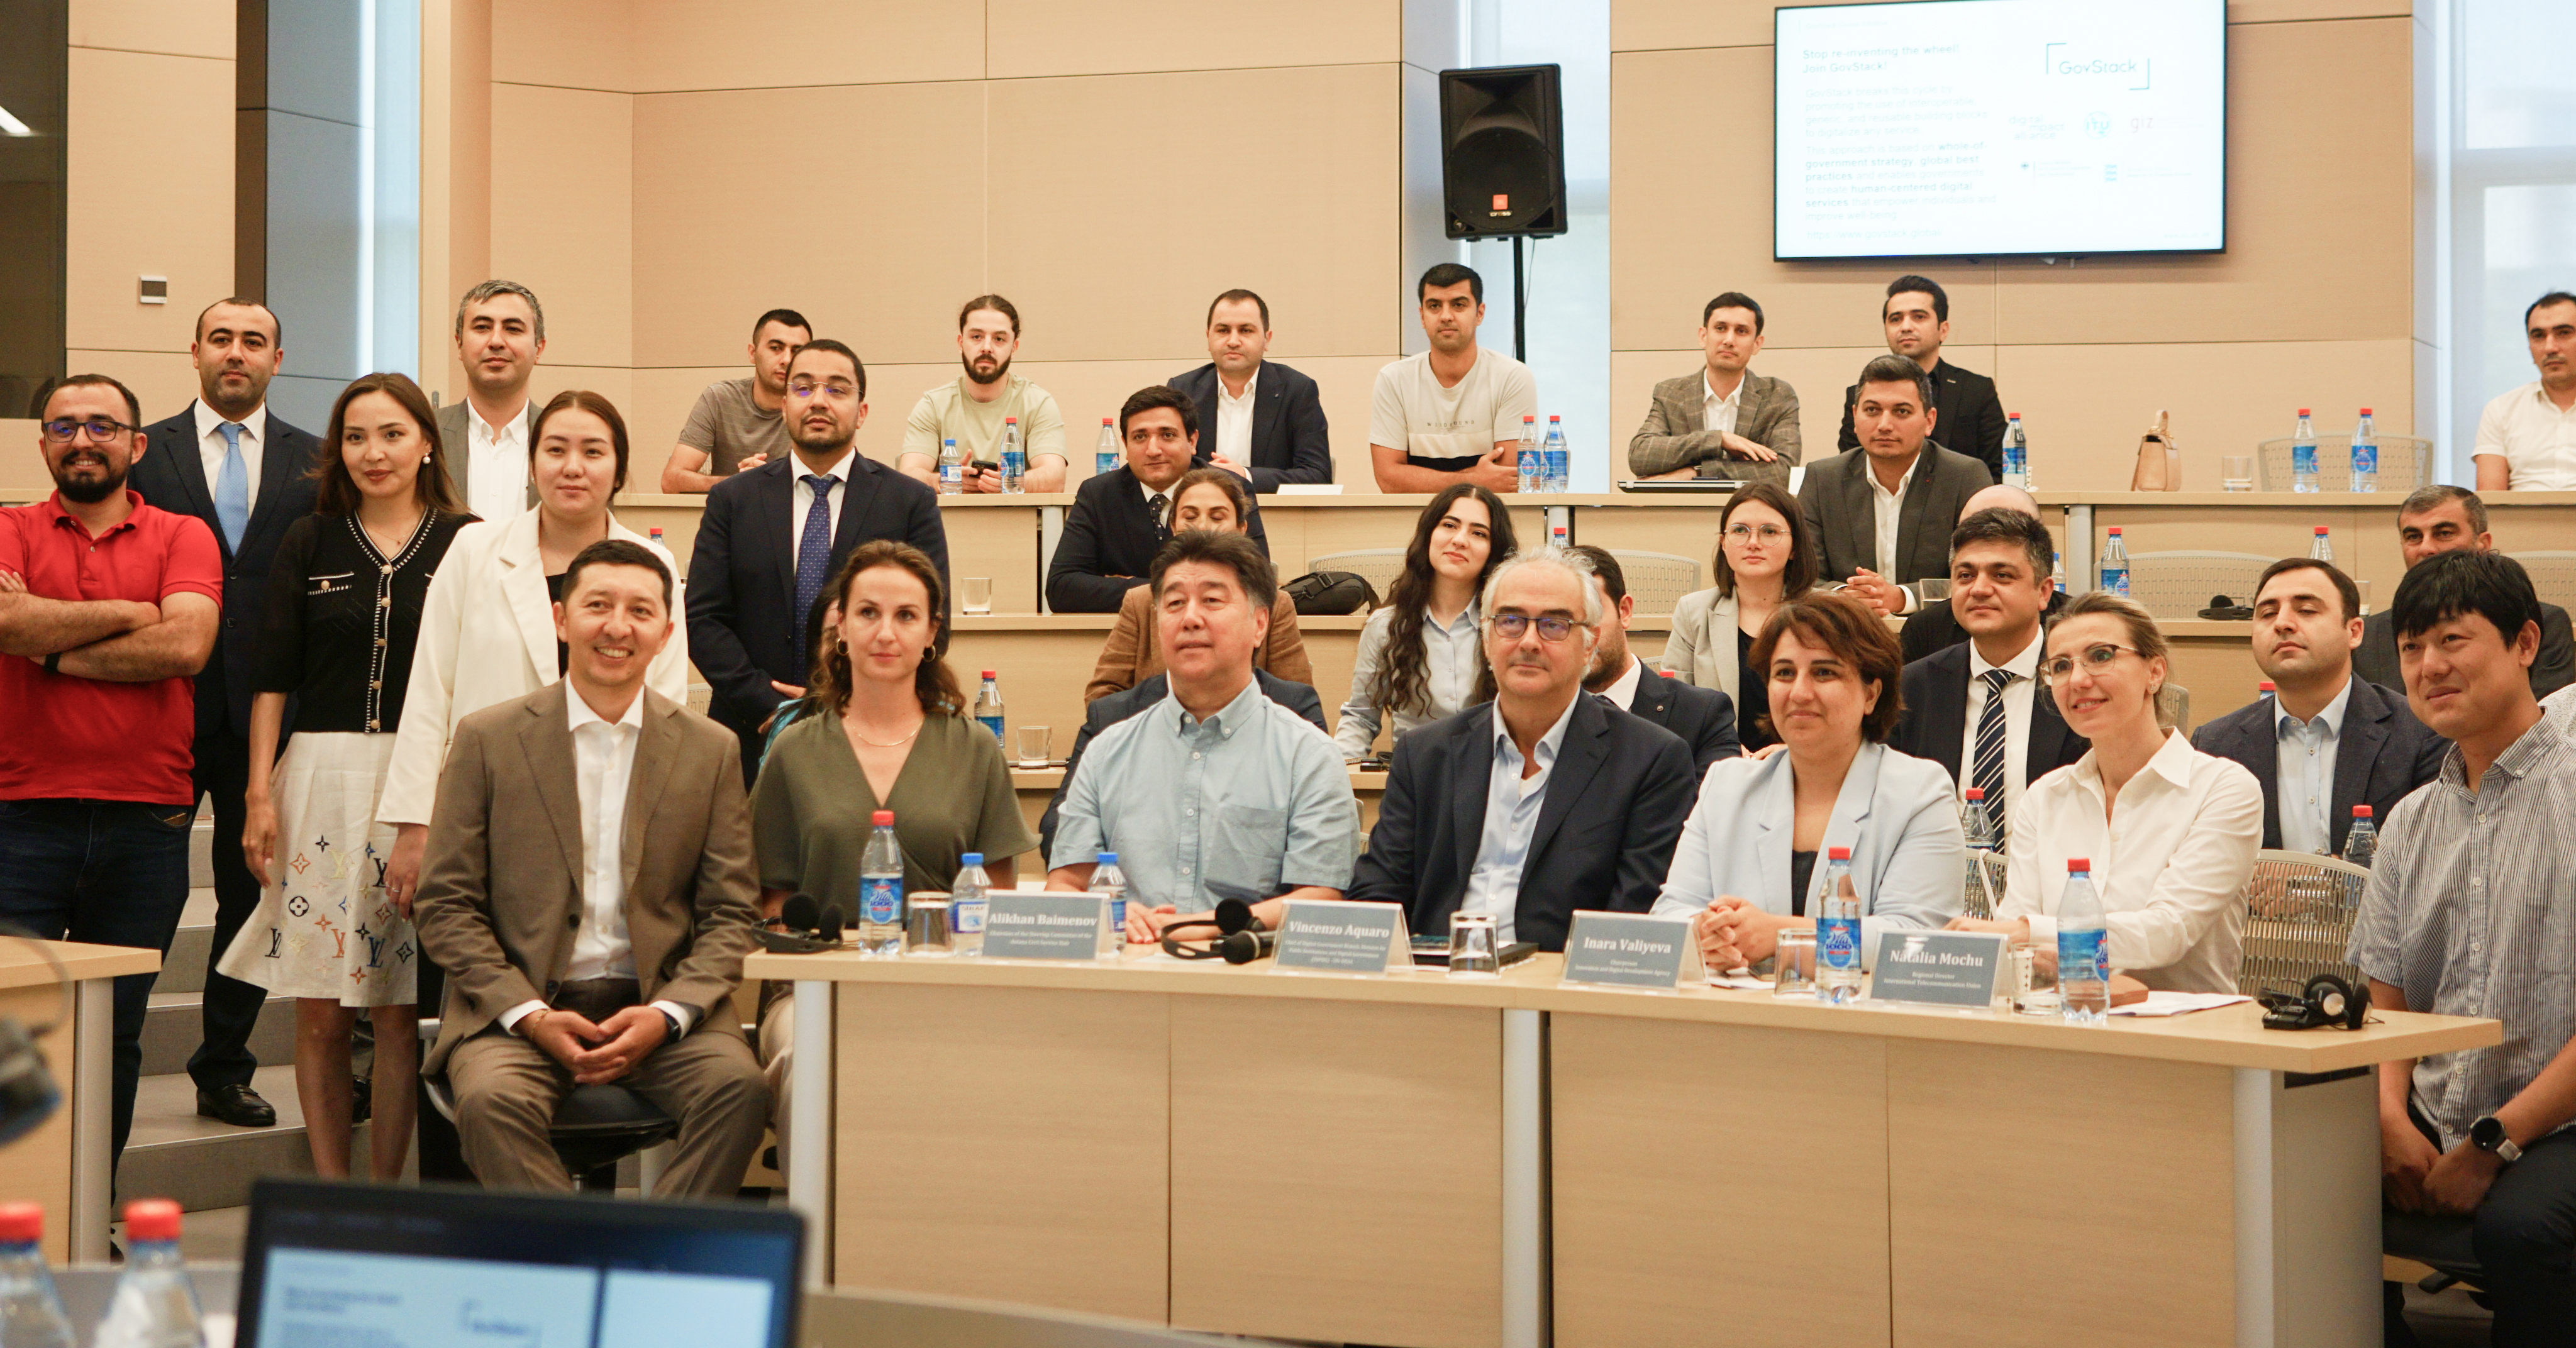 Астанинский хаб госслужбы совместно с Правительством Азербайджана провели семинар, посвященный успешным кейсам и глобальным трендам в развитии электронного правительства